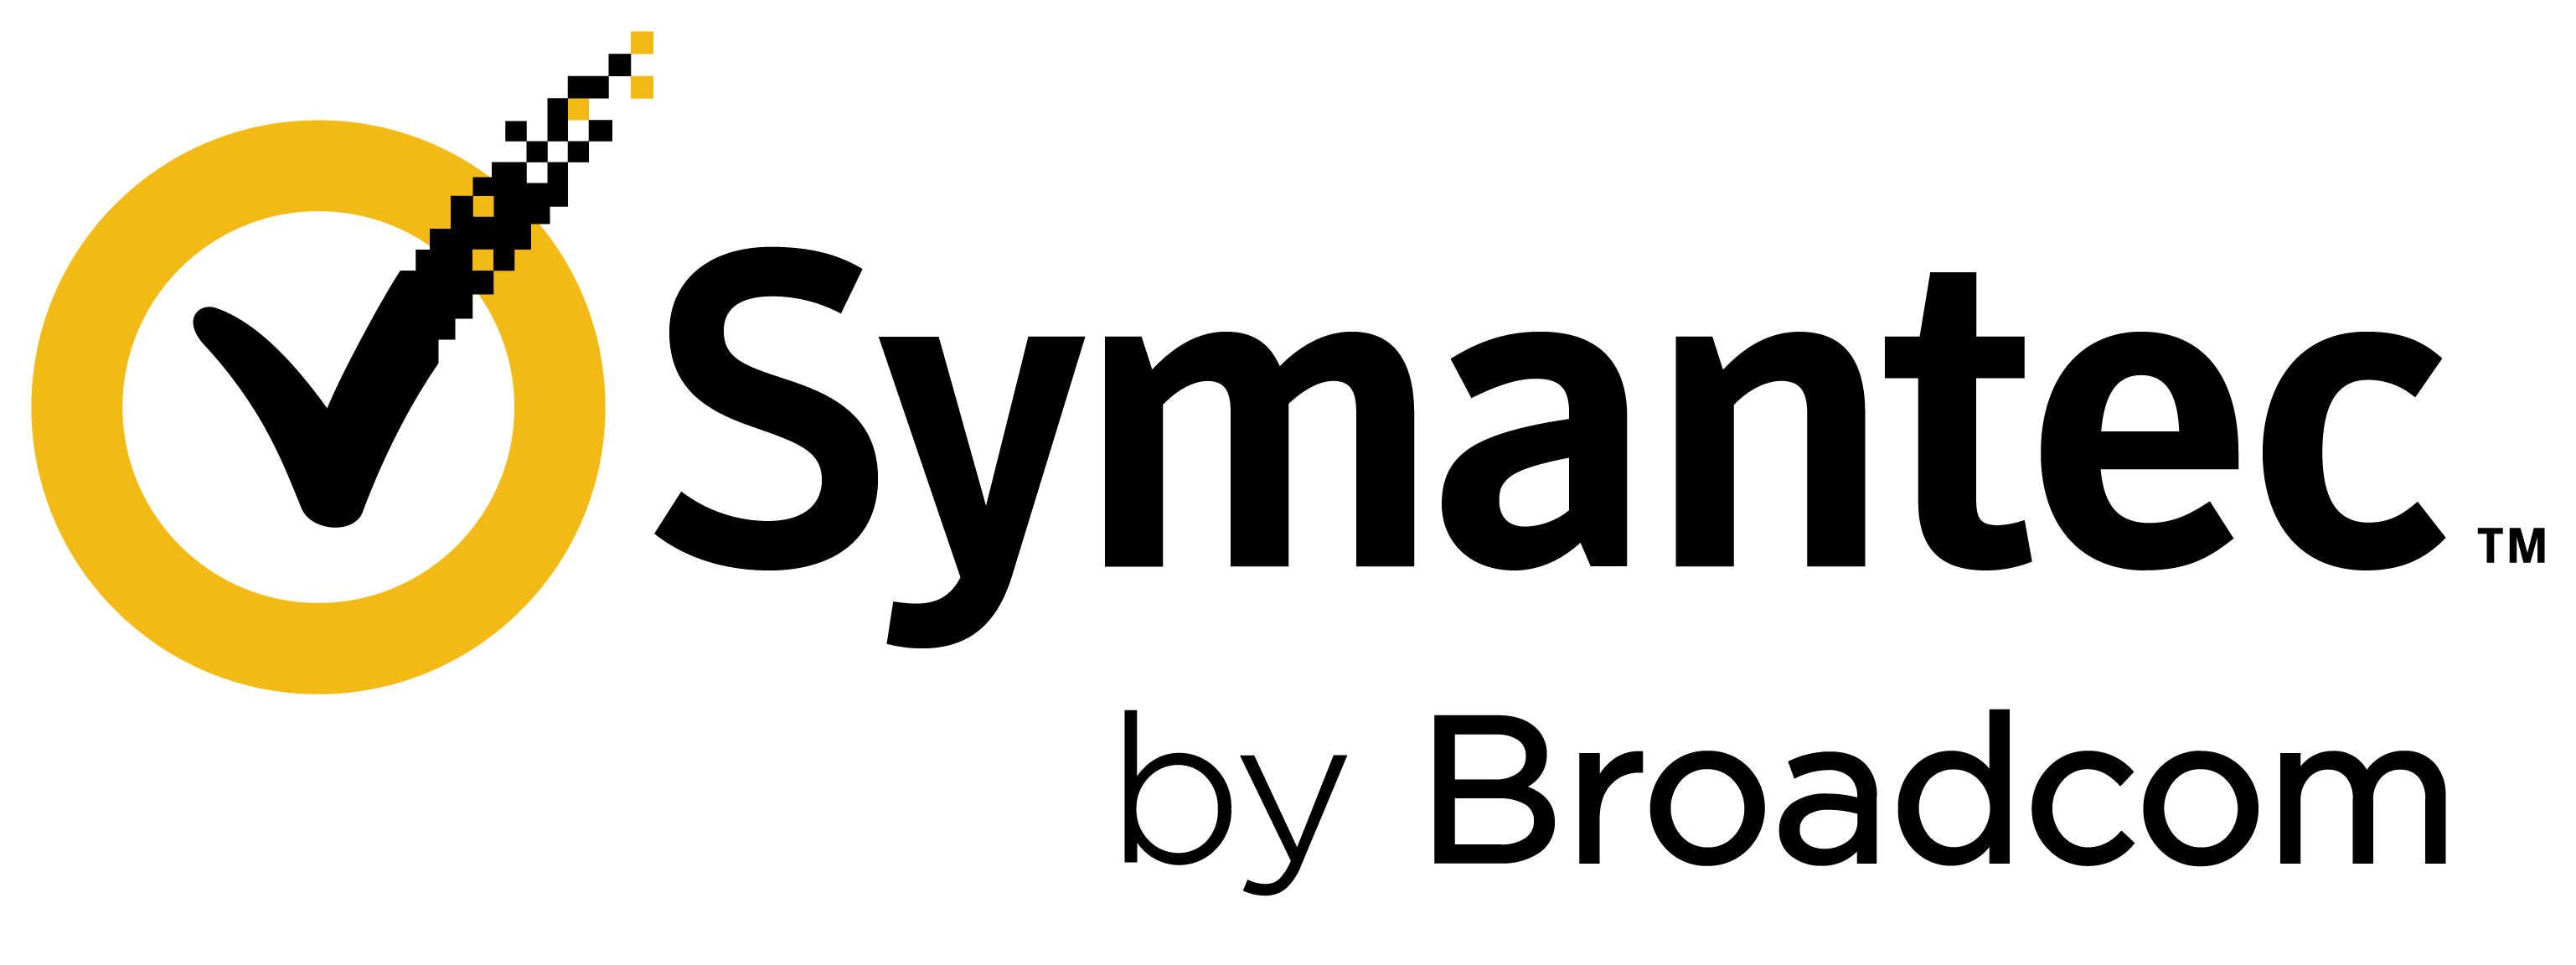 Symantec by broadcom logo